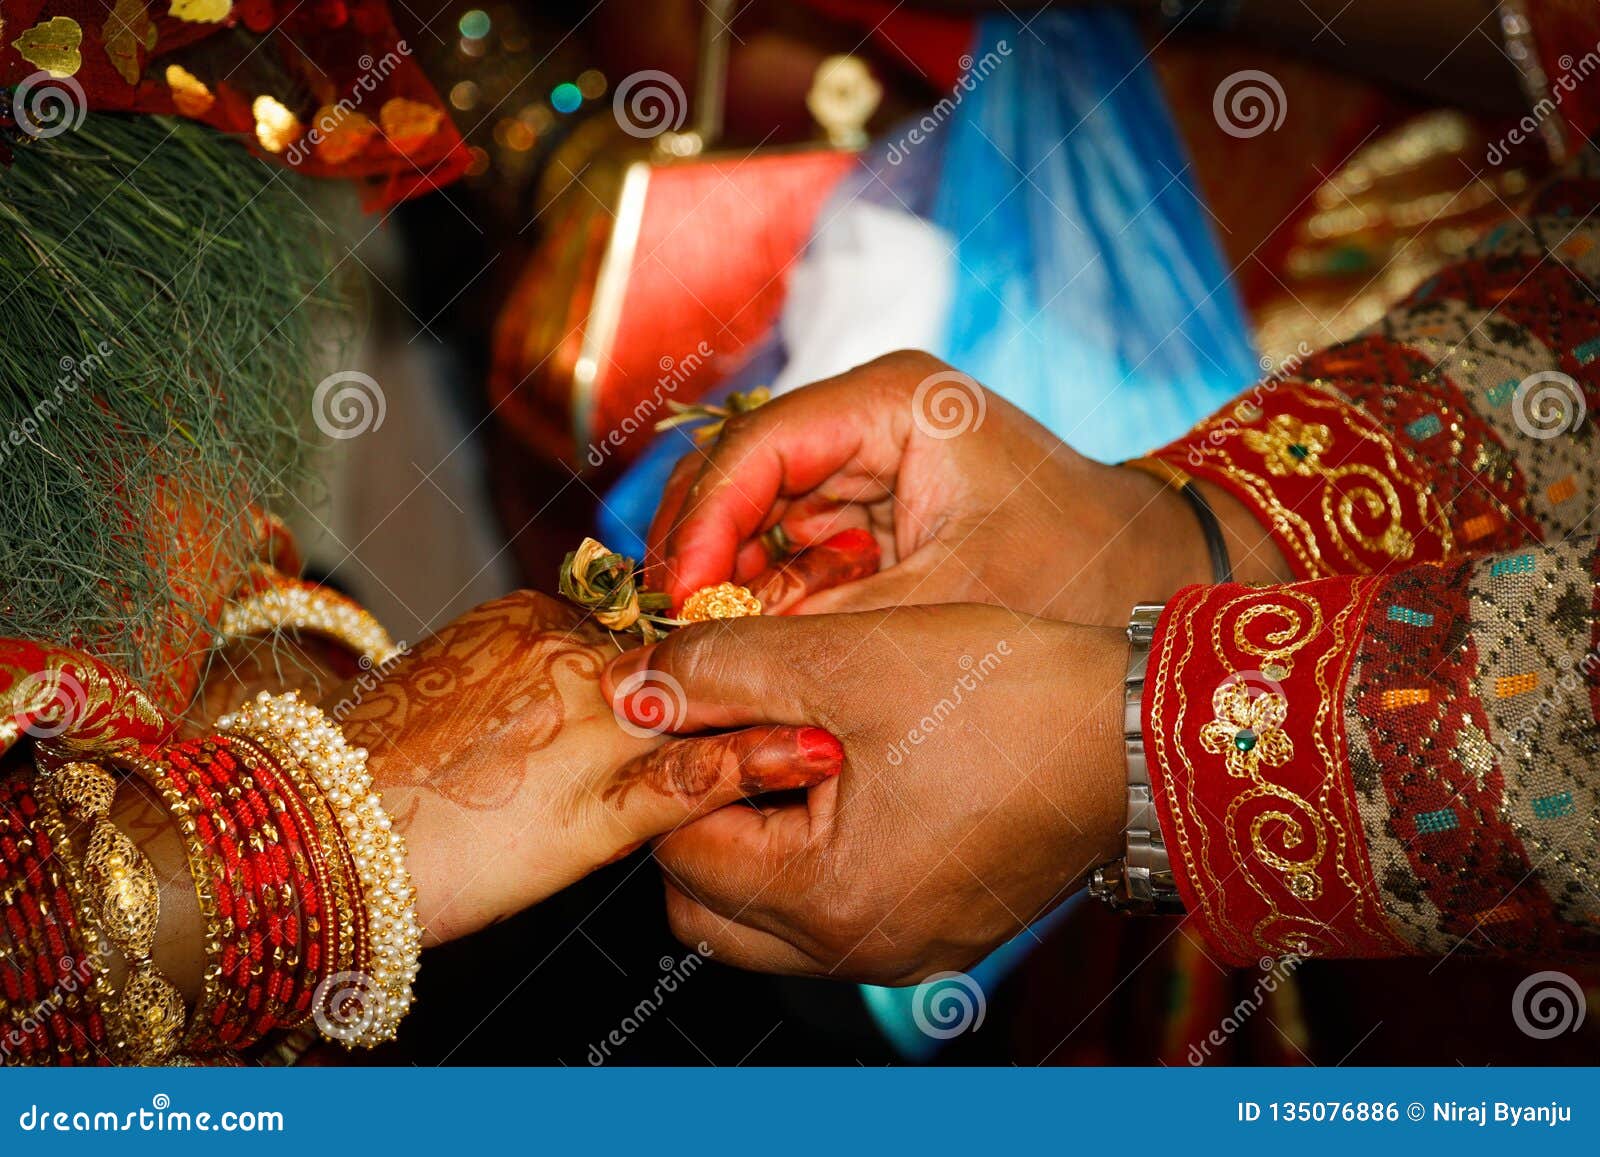 Parineeti-Raghav Engagement : सगाई में रोज पिंक सूट में परी सी दिखी  परिणीति, राघव का लुक था सिम्‍पल और क्‍लासी | Parineeti-Raghav Engagement :  Parineeti Shares Picture; See The Couple's ...